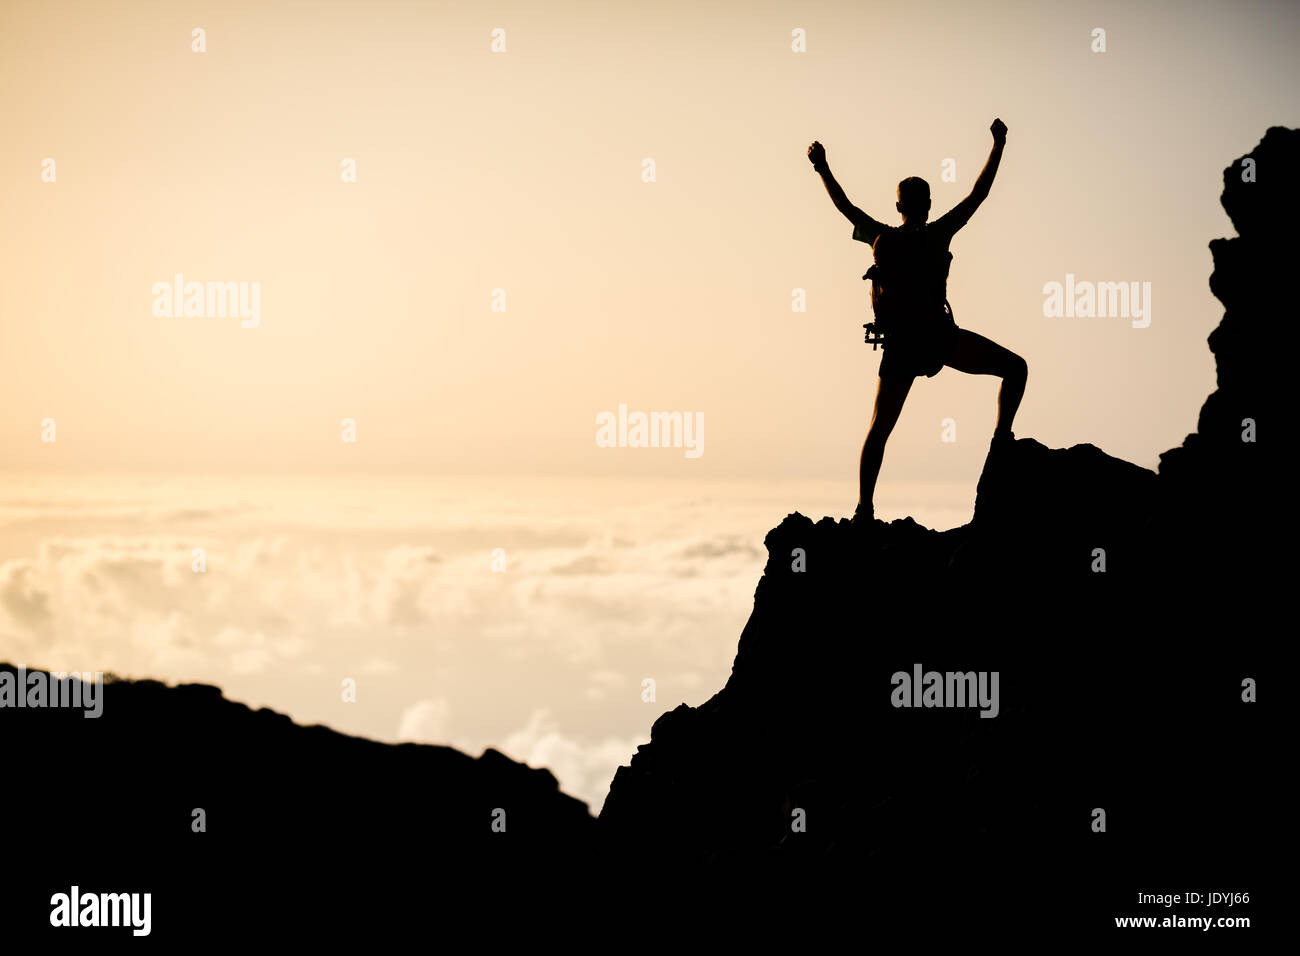 Mann erfolgreich Wandern Klettern Silhouette in Bergen, Motivation und Inspiration im wunderschönen Sonnenuntergang. Kletterer Arme ausgestreckt am Berg oben l Stockfoto